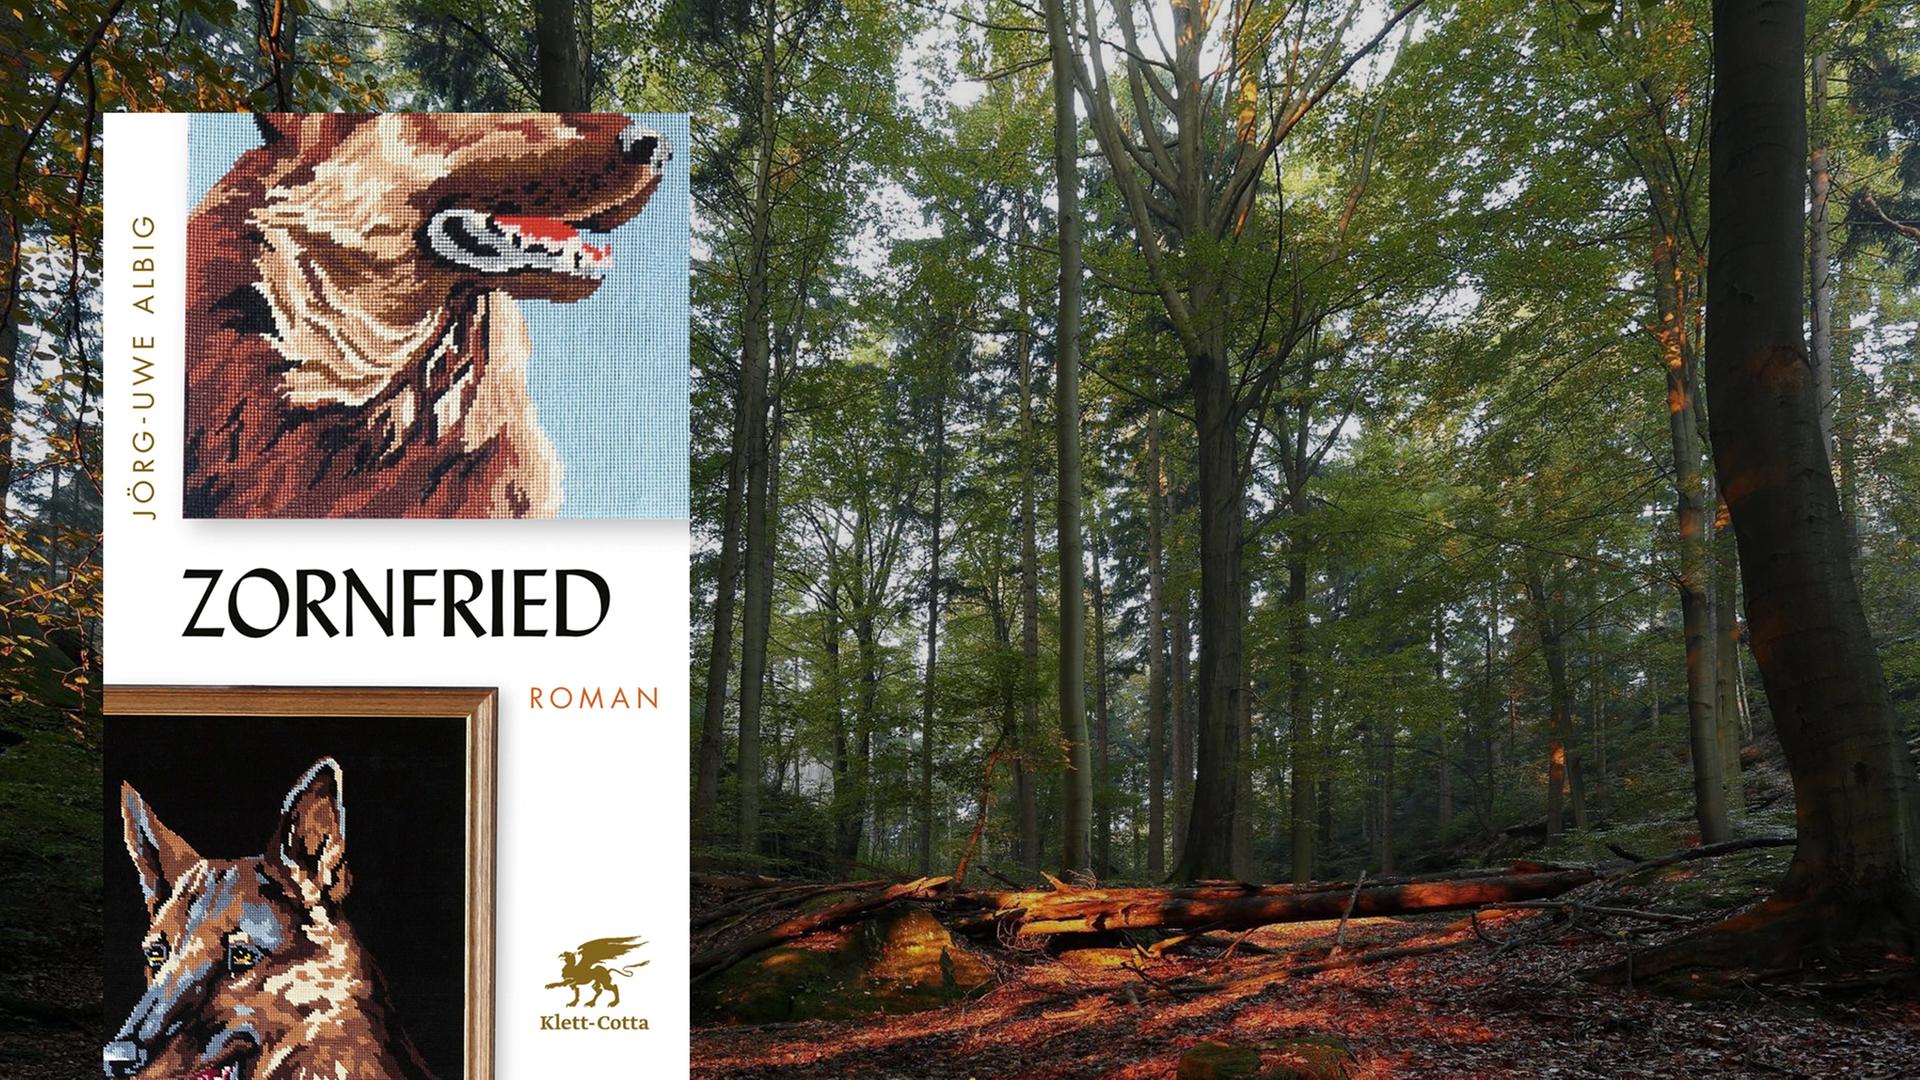 Eine Montage zeigt das Buchcover von "Zornfried" von Jörg-Uwe Albig neben einem stimmungsvollen Herbstwald